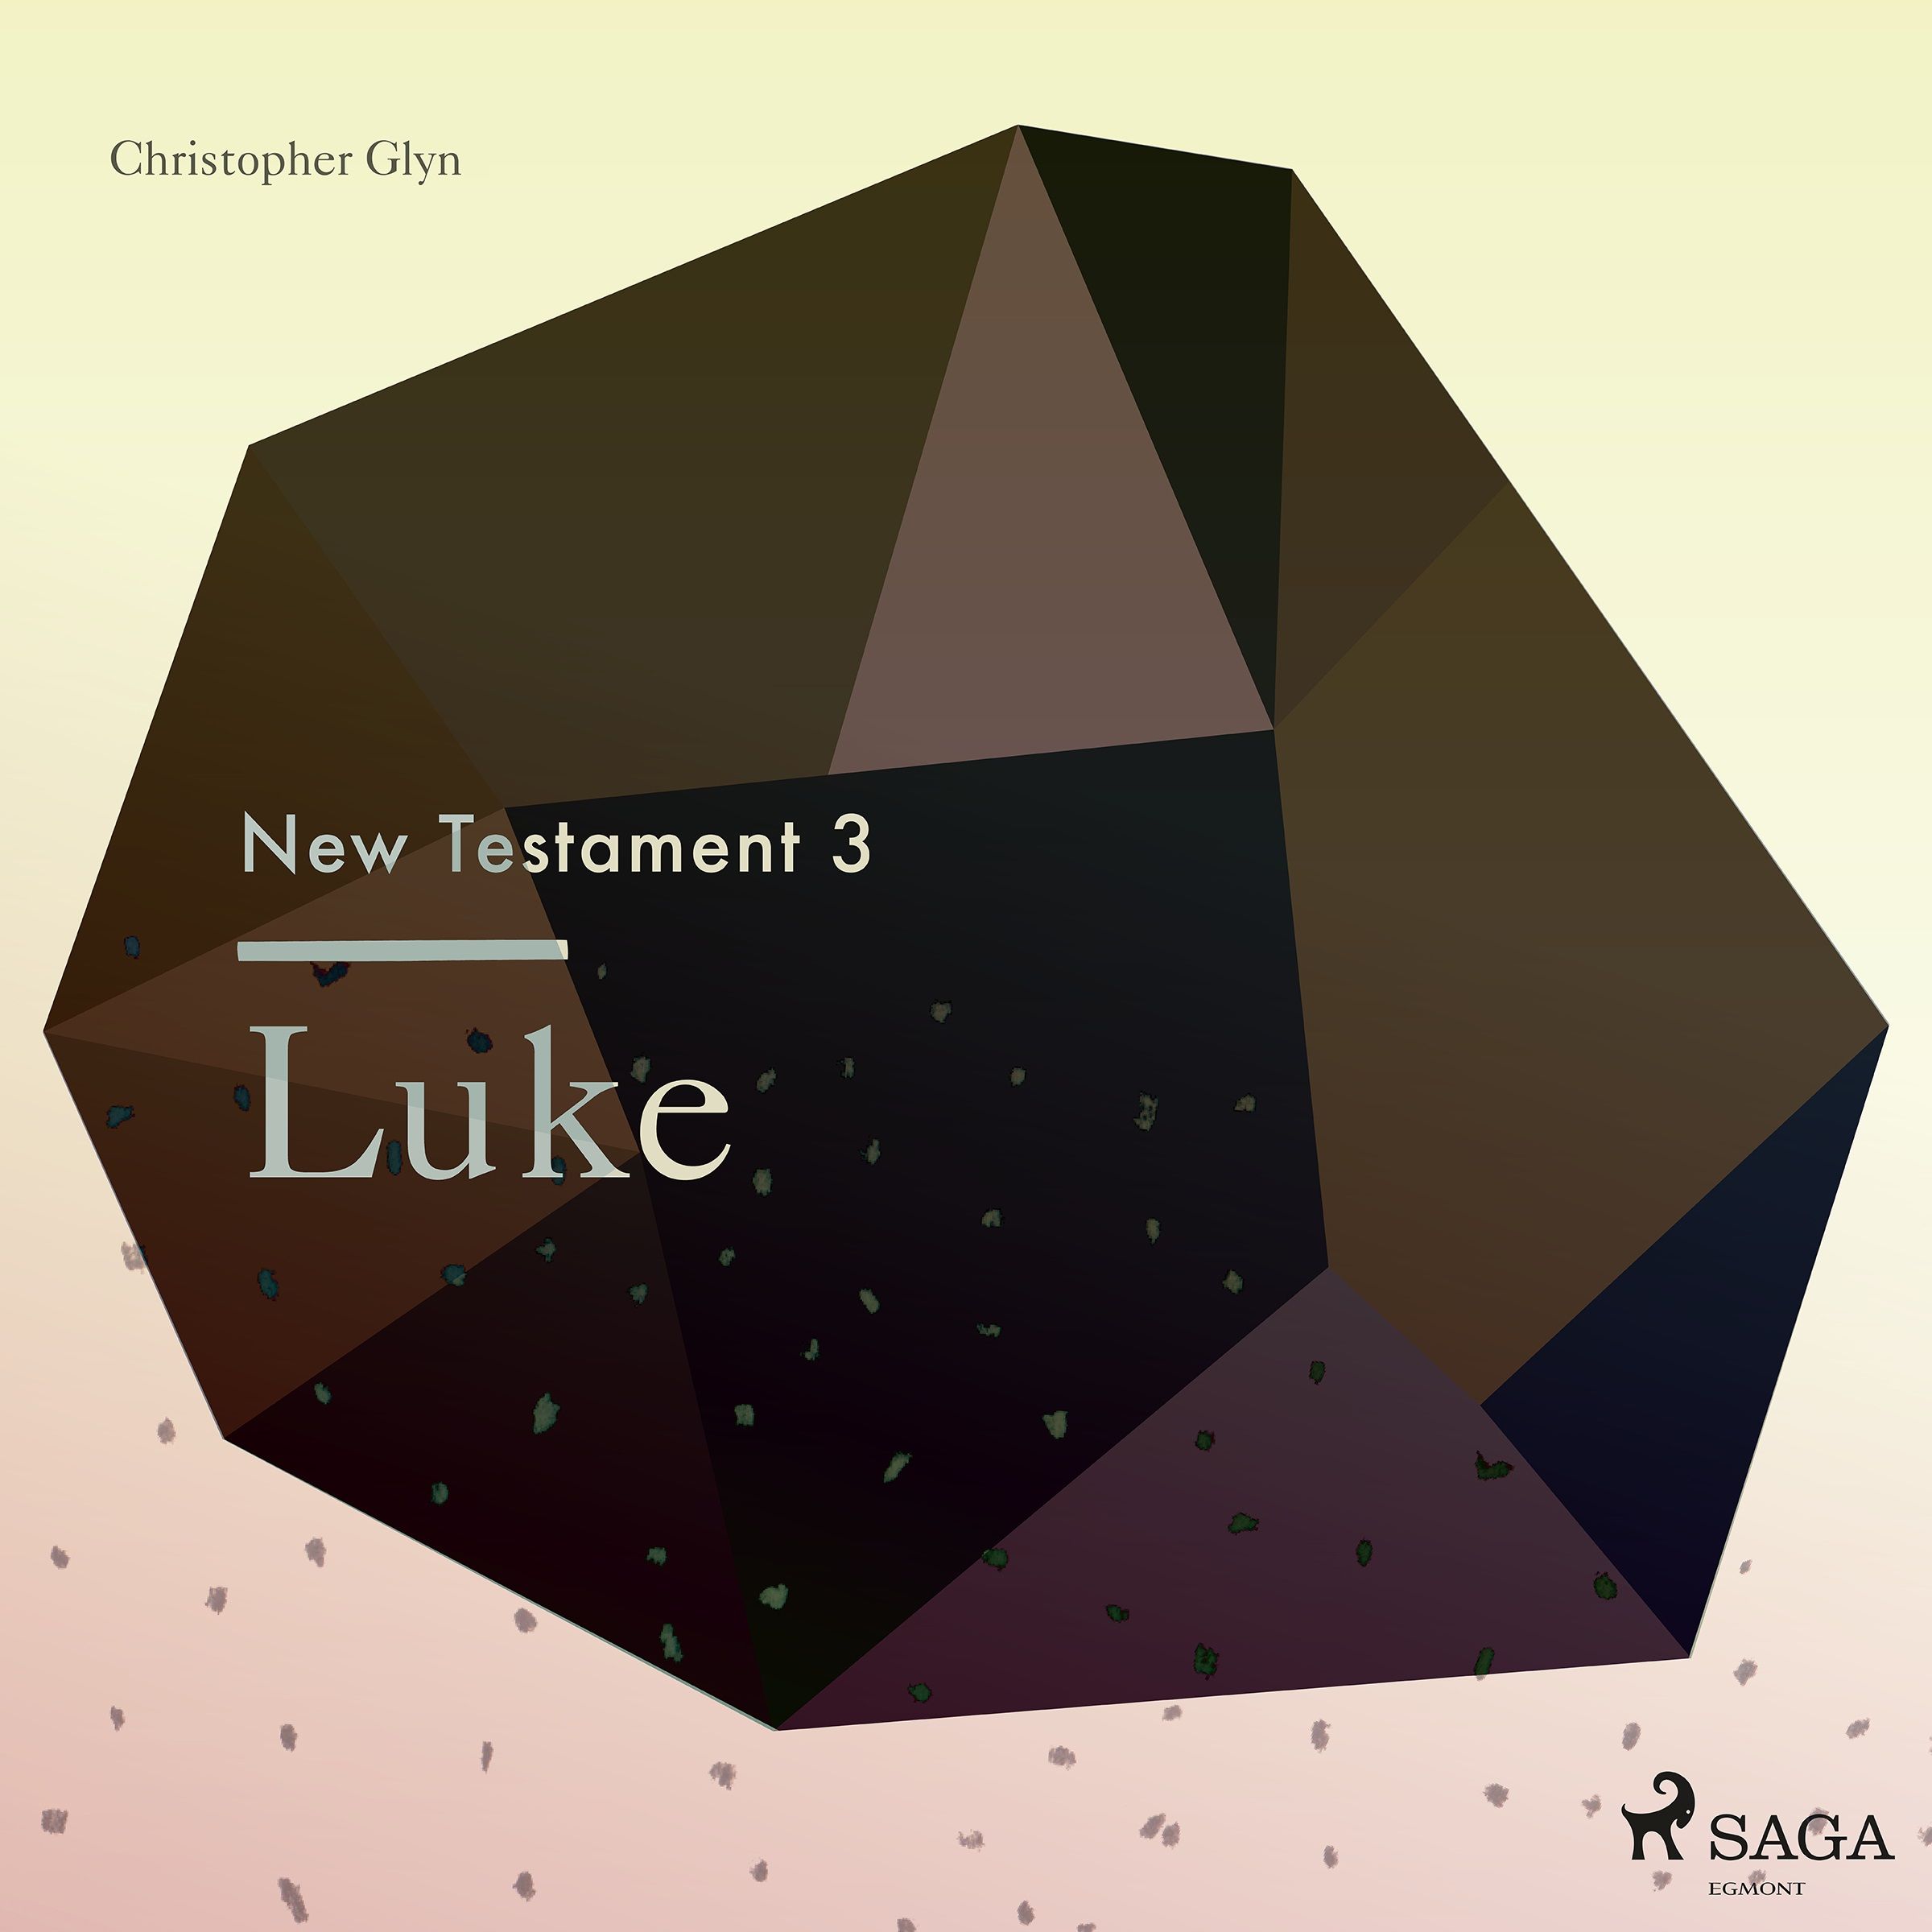 The New Testament 3 - Luke, ljudbok av Christopher Glyn